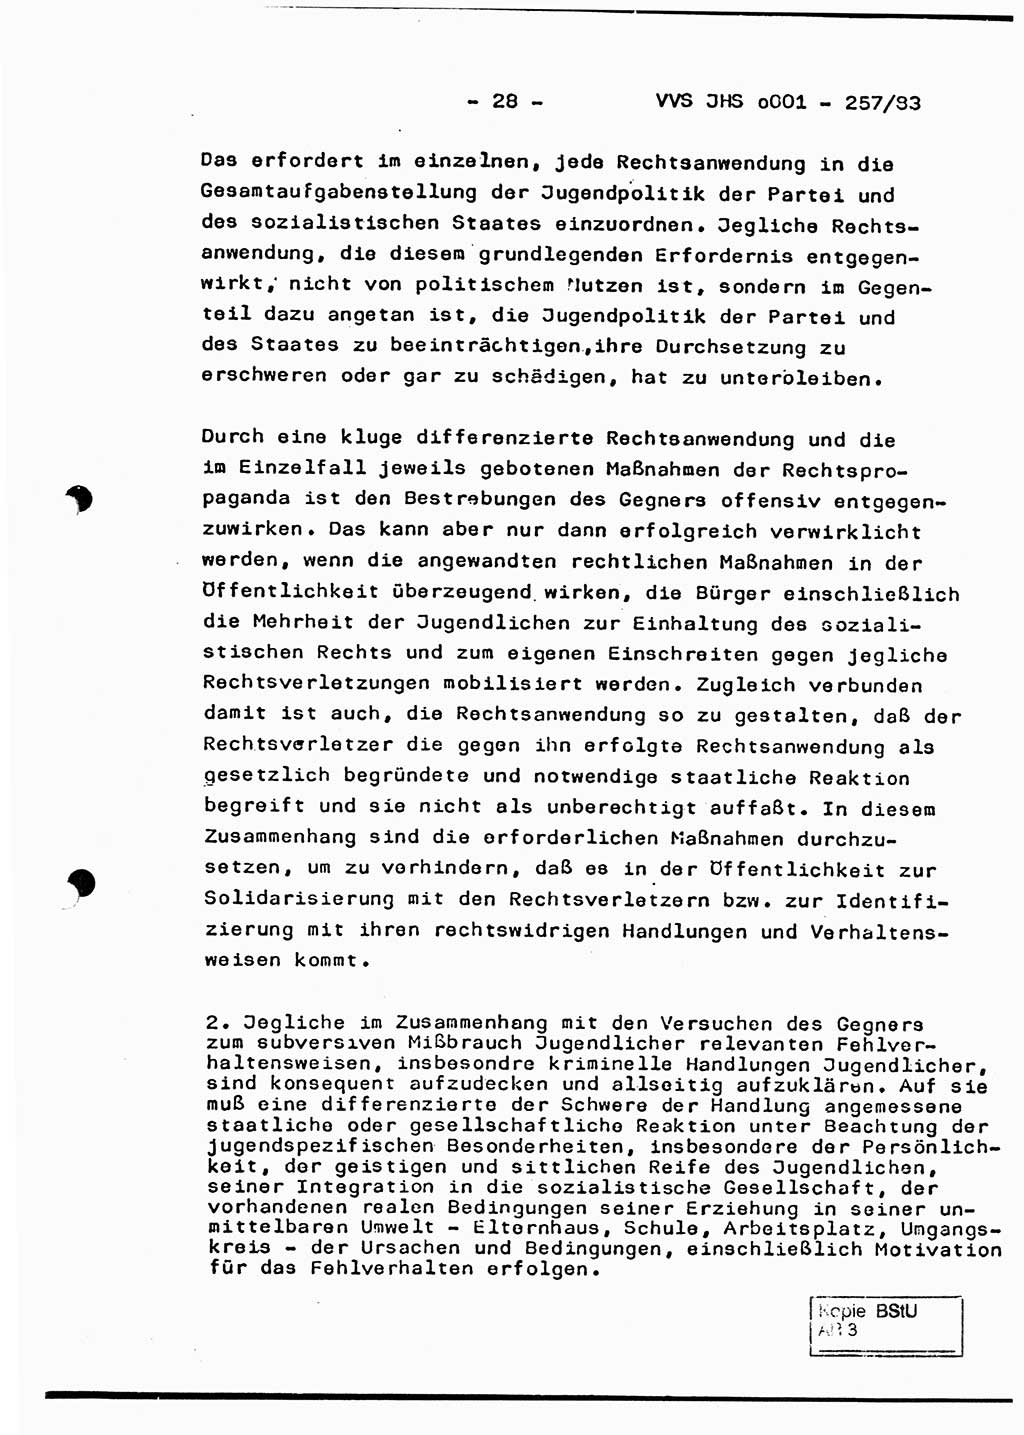 Dissertation, Oberst Helmut Lubas (BV Mdg.), Oberstleutnant Manfred Eschberger (HA IX), Oberleutnant Hans-Jürgen Ludwig (JHS), Ministerium für Staatssicherheit (MfS) [Deutsche Demokratische Republik (DDR)], Juristische Hochschule (JHS), Vertrauliche Verschlußsache (VVS) o001-257/83, Potsdam 1983, Seite 28 (Diss. MfS DDR JHS VVS o001-257/83 1983, S. 28)